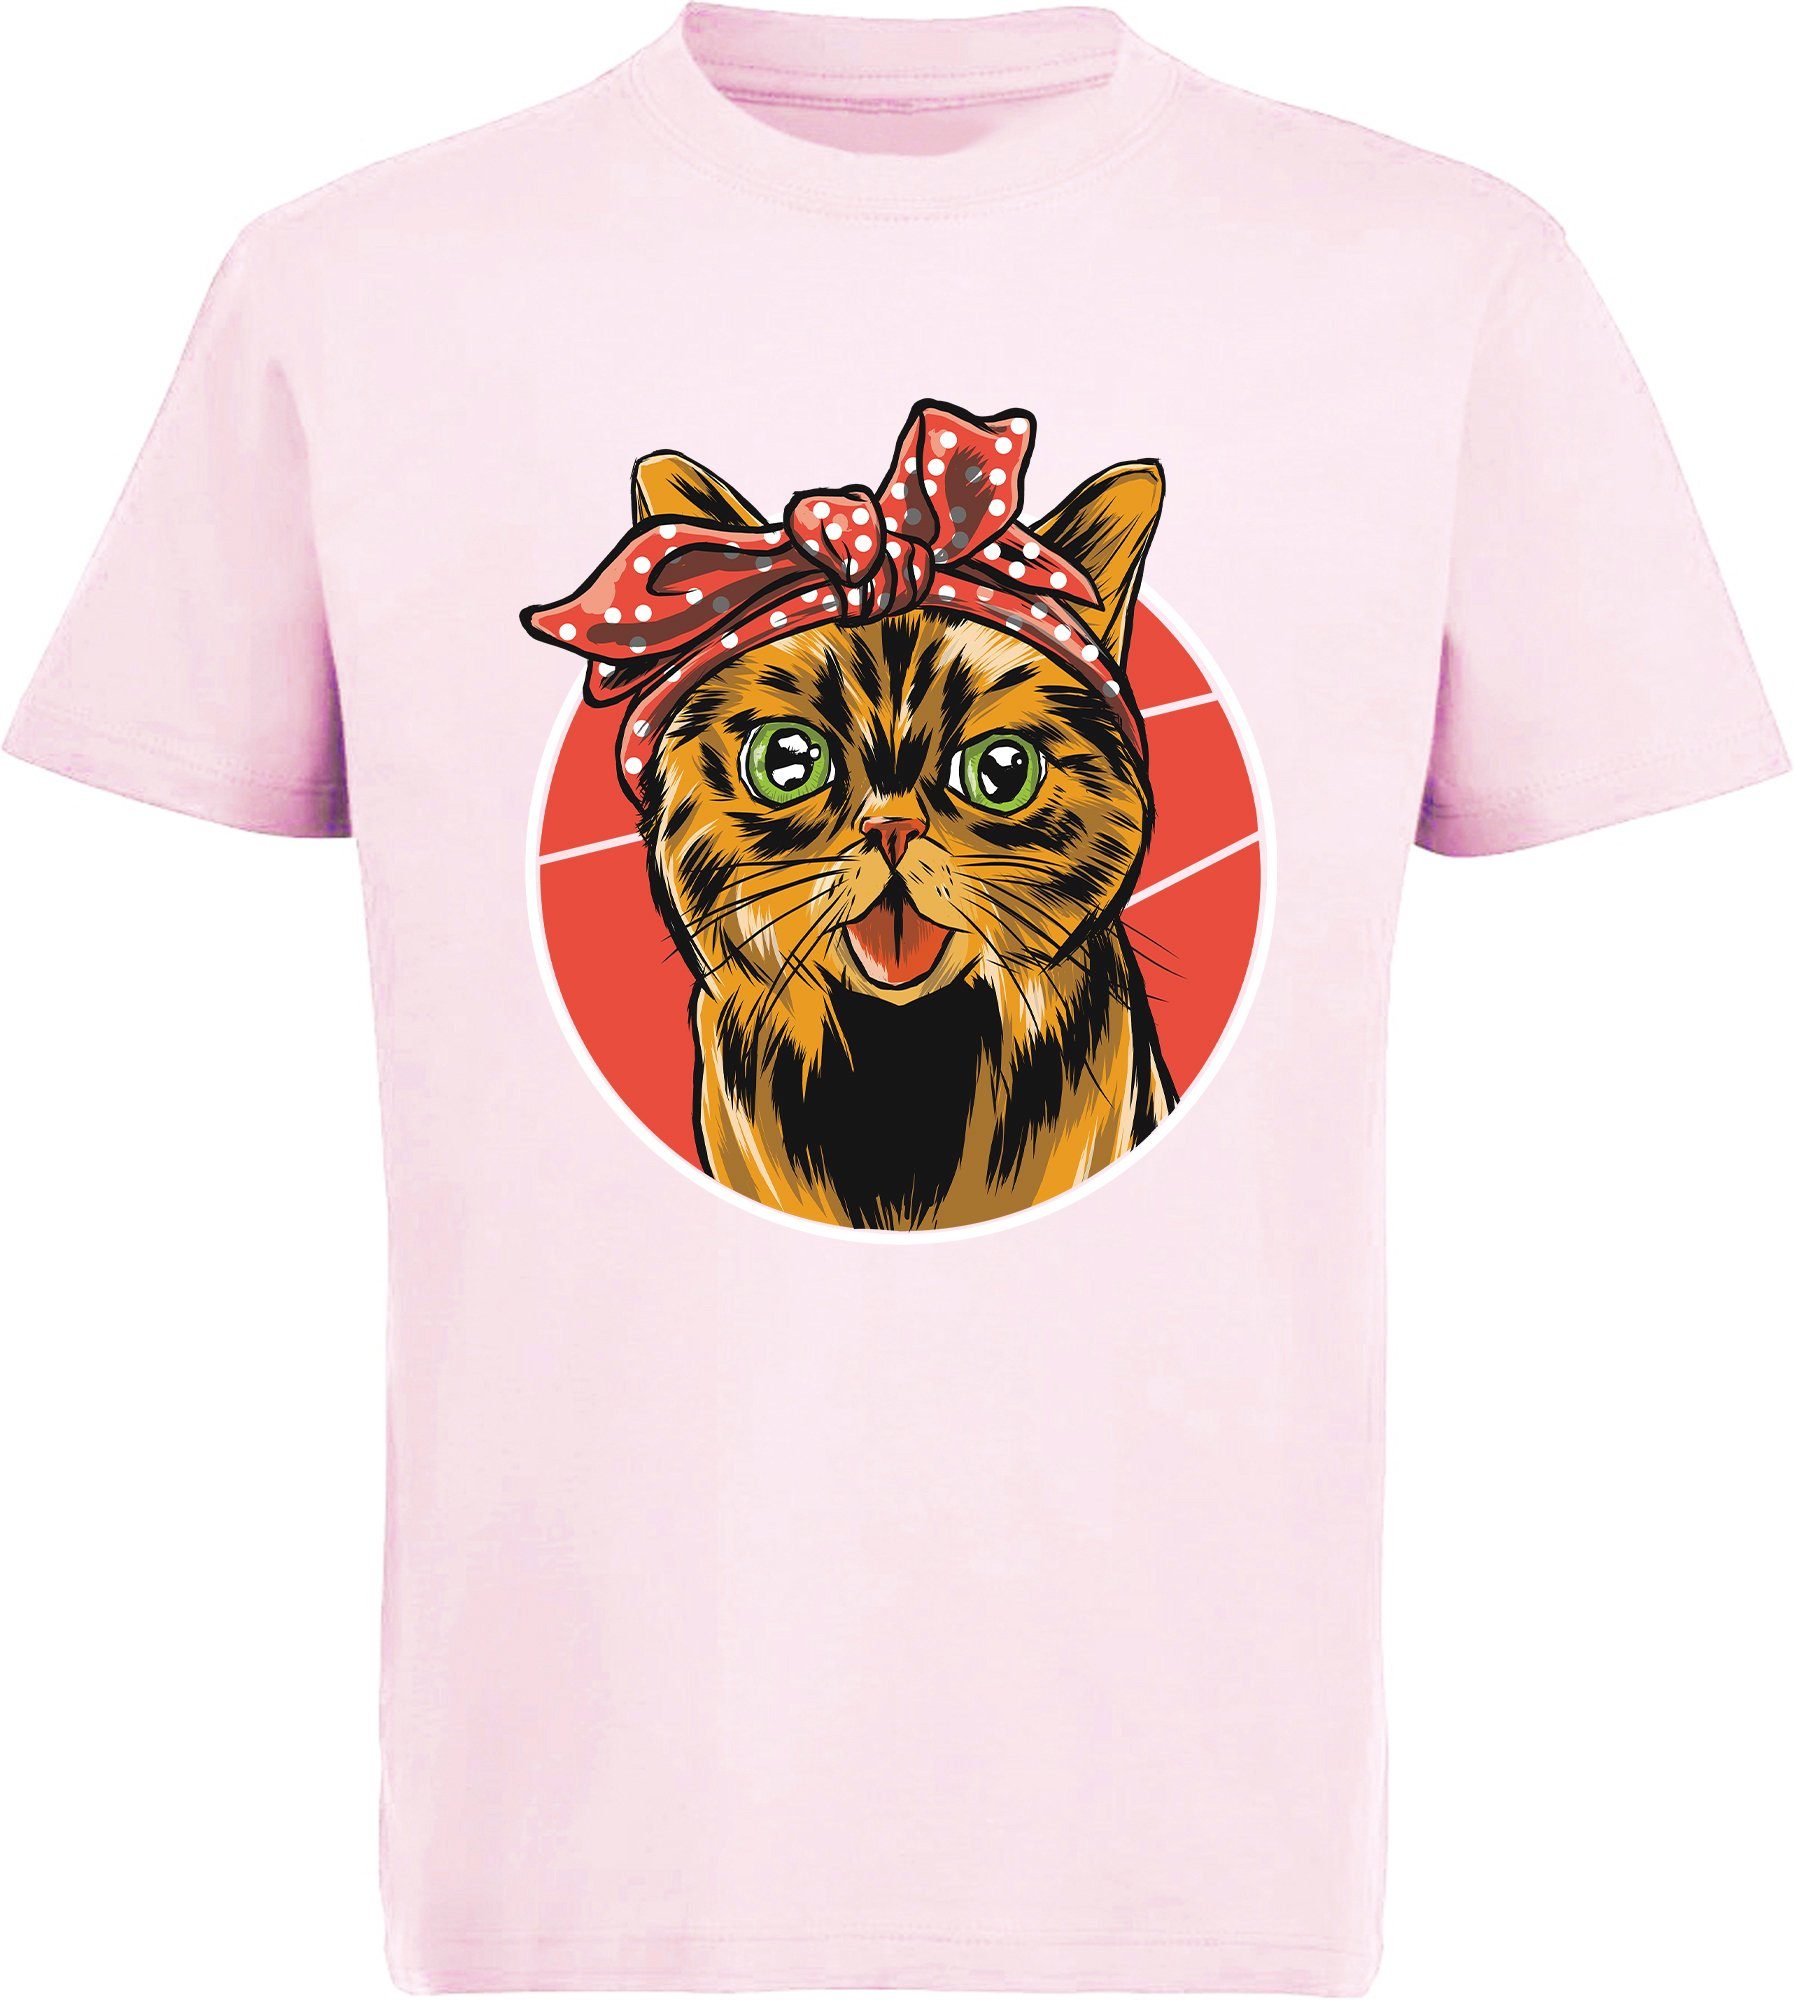 Katze Katze, mit Kinder schwarz, Mädchen Print-Shirt mit weiß, i103 T-Shirt Schleife rot, Baumwollshirt bedrucktes MyDesign24 rosa,